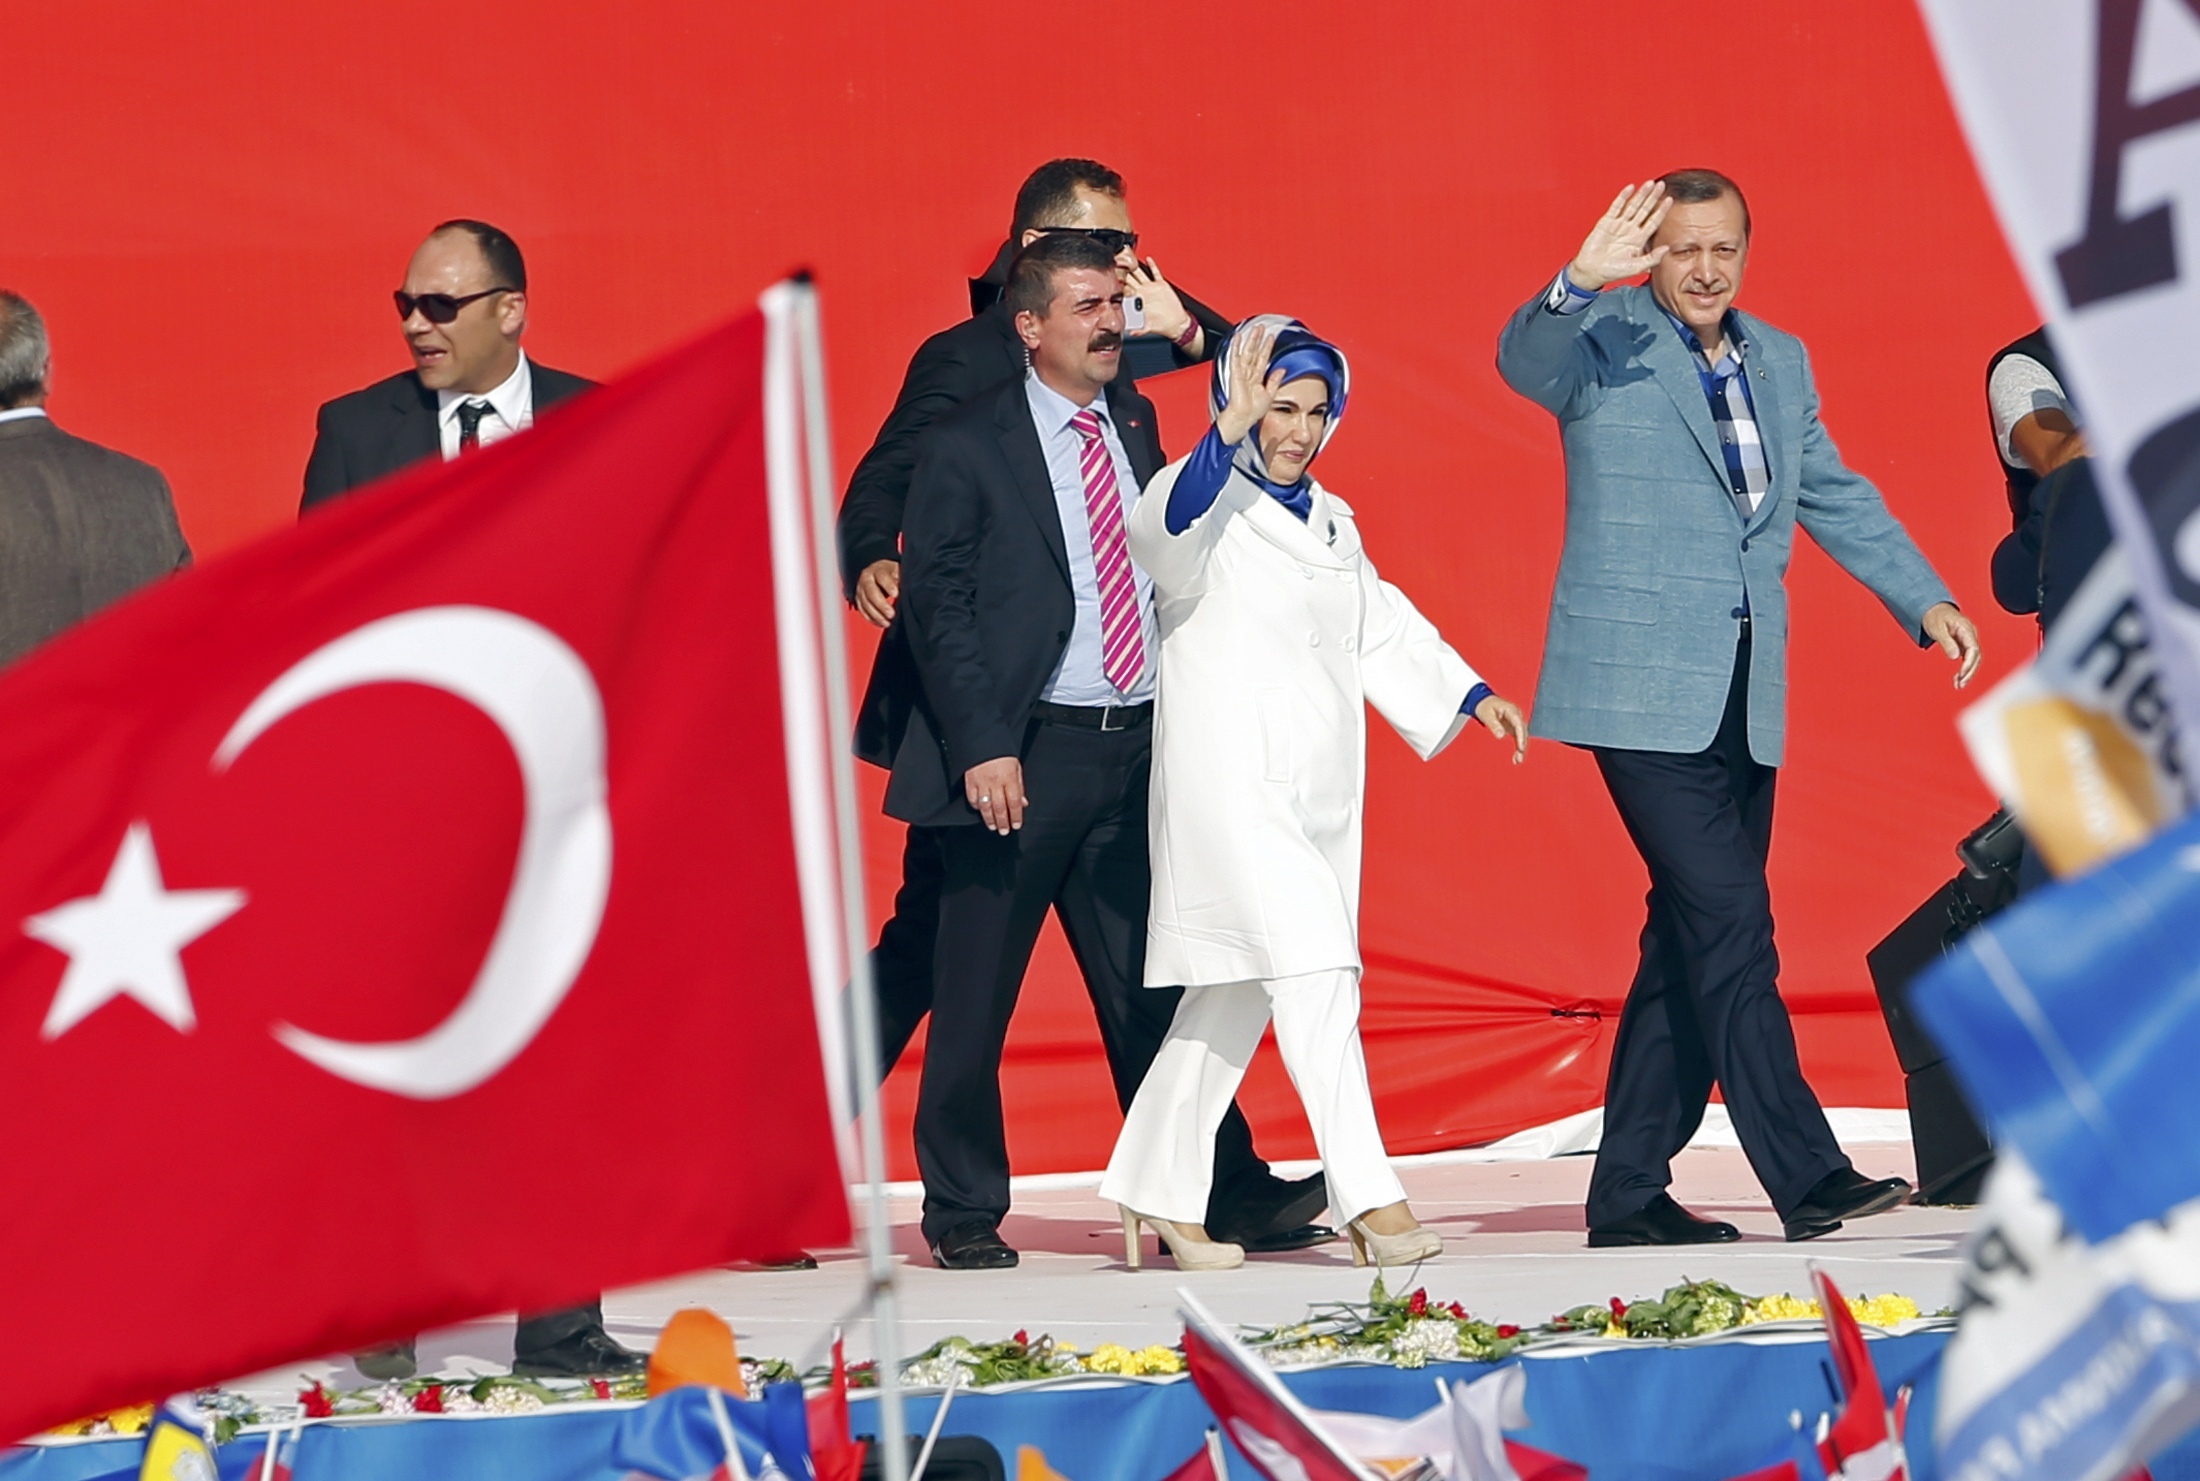 Παραλήρημα Ερντογάν στους οπαδούς του: Είμαι ο καλύτερος πρωθυπουργός! – Και στην Ελλάδα έγιναν τα ίδια, αλλά τους έδωσαν λεφτά!